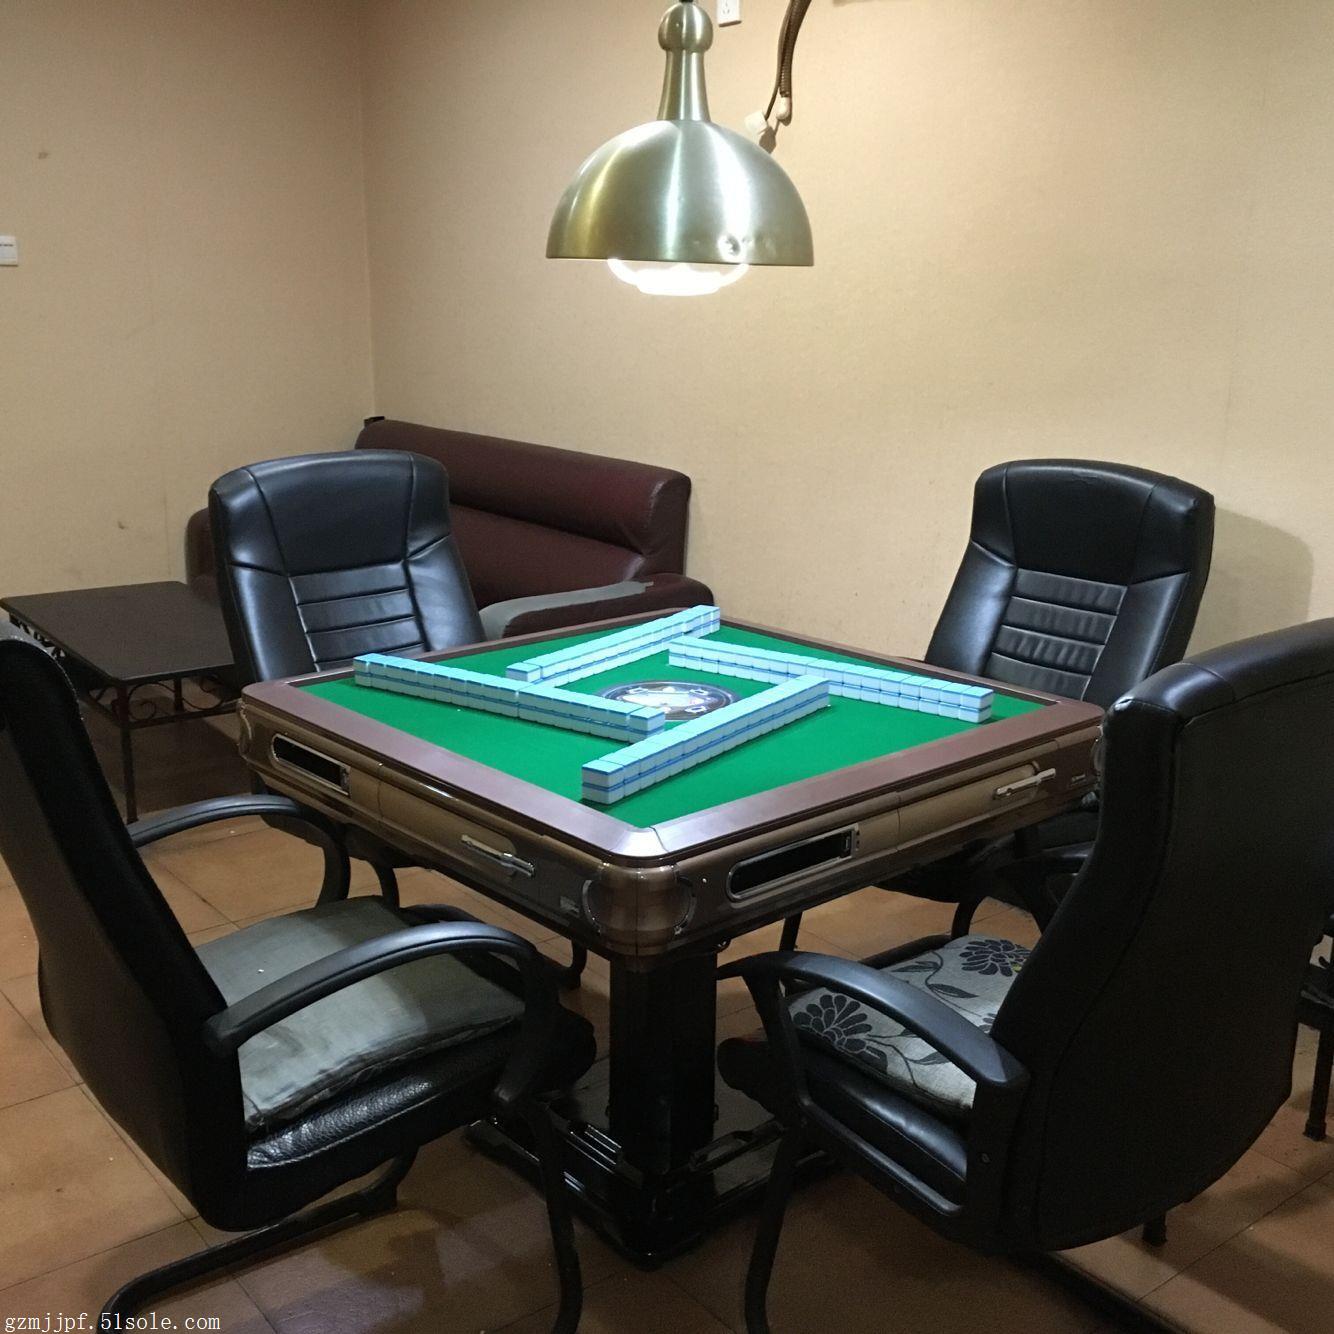 广州棋牌室专用麻将机专卖价格广州麻将桌购买